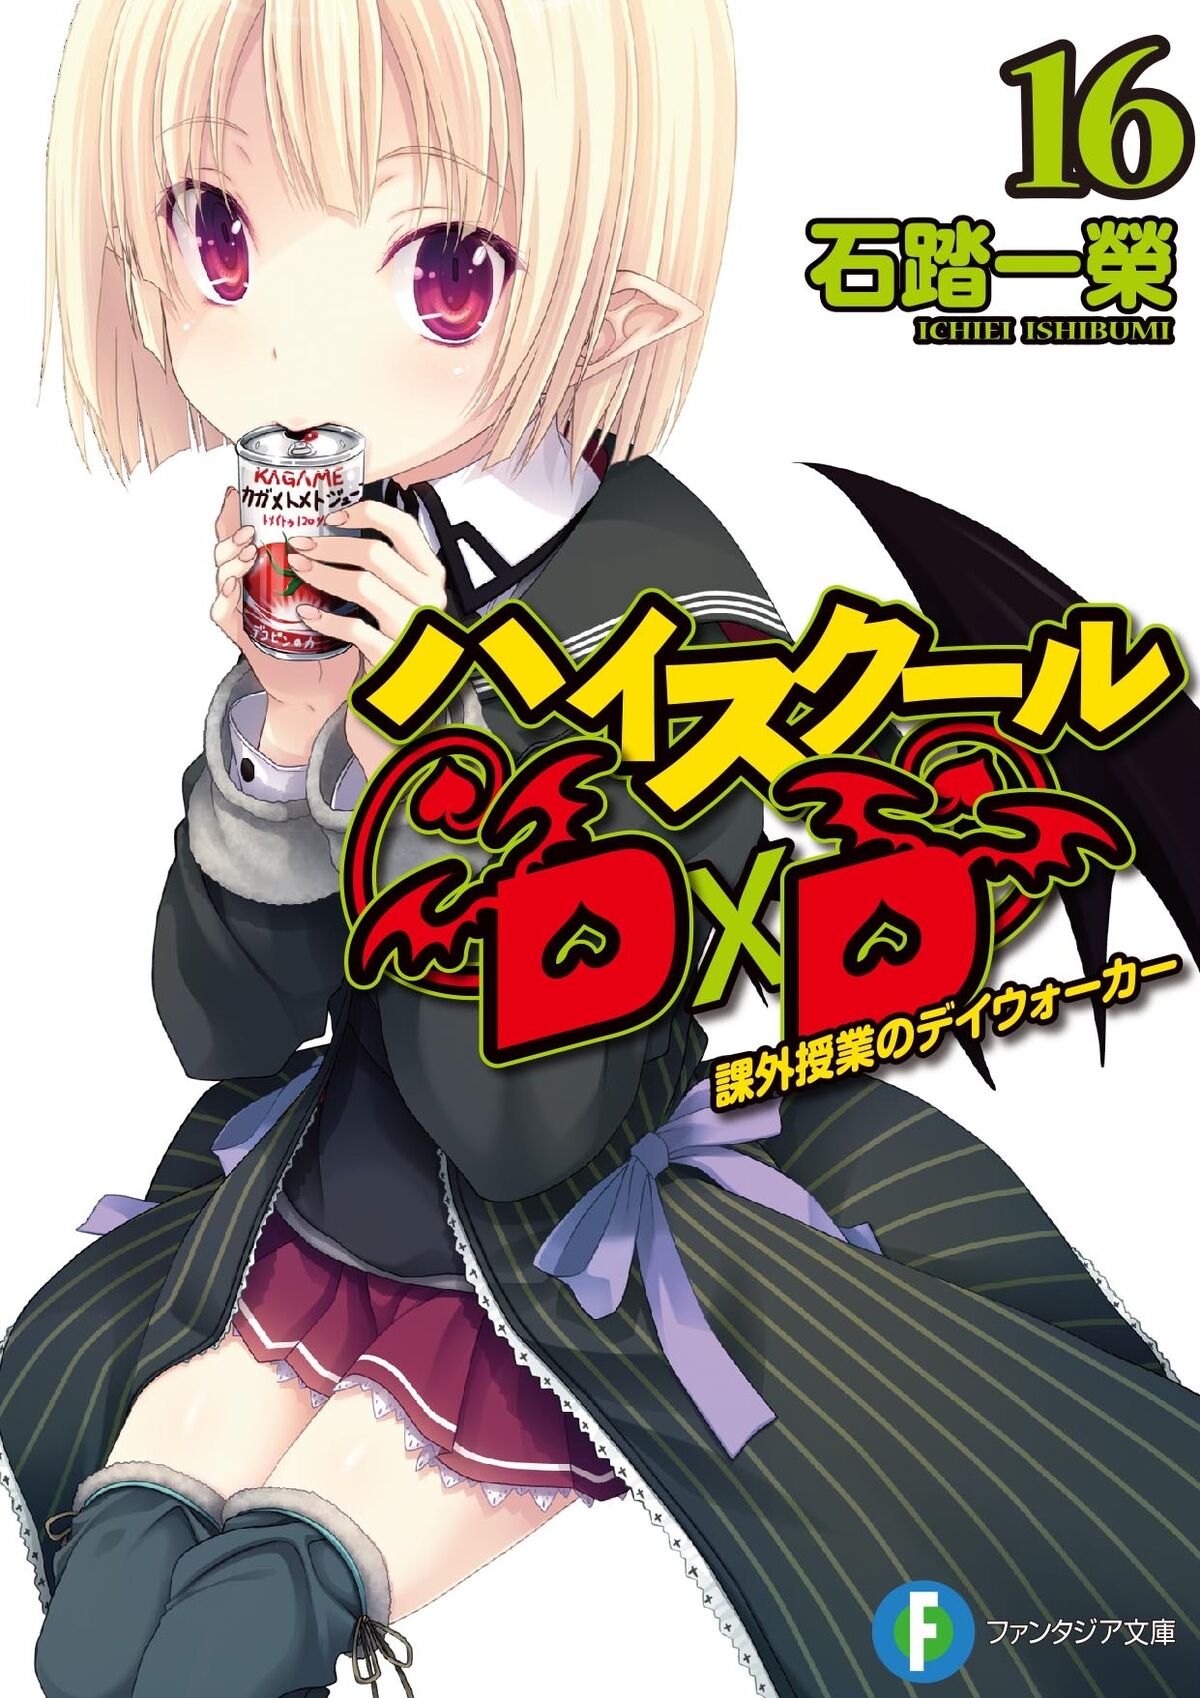 Light Novel Volume 24, High School DxD Wiki